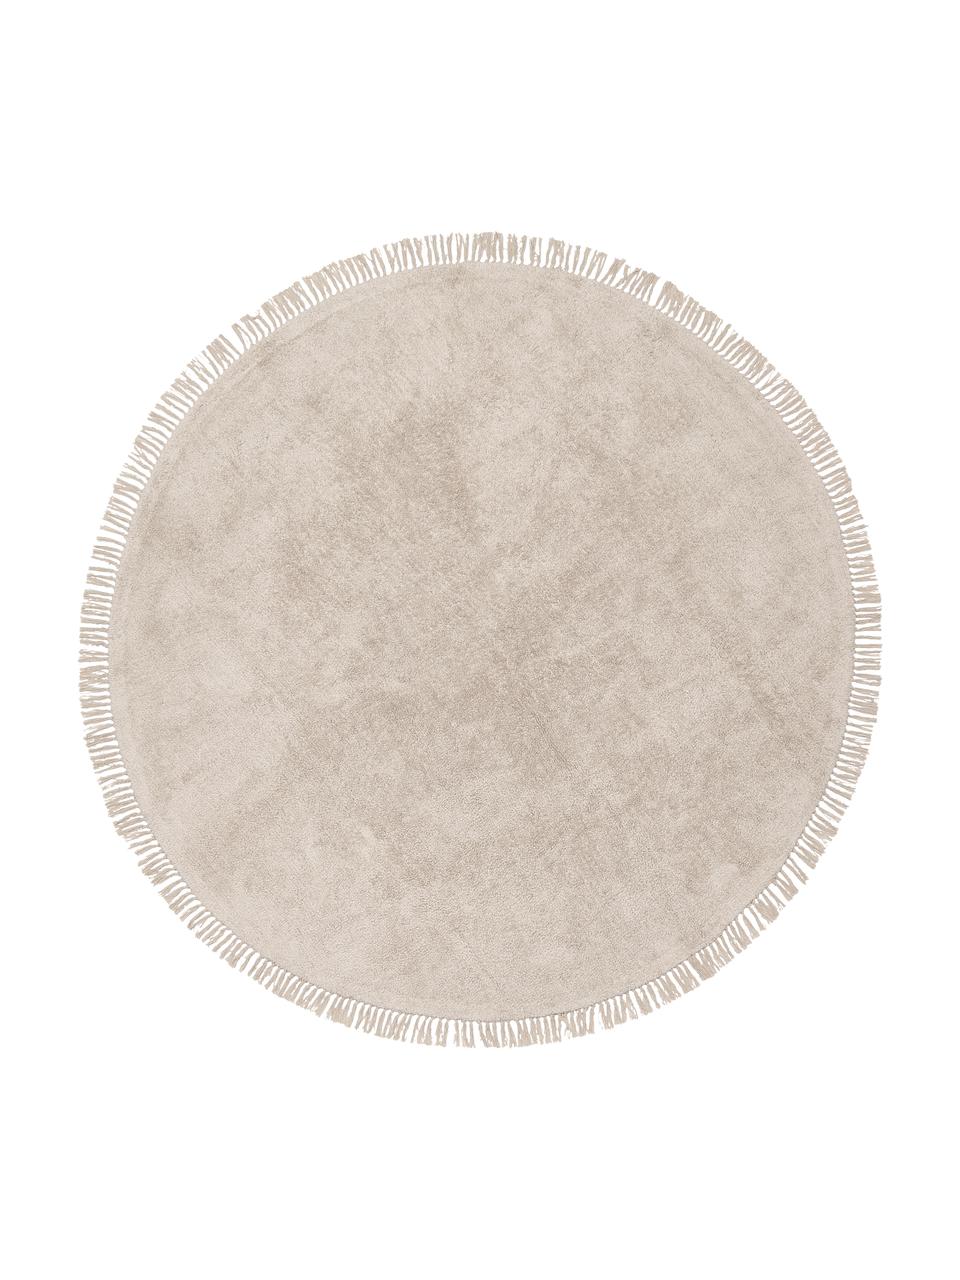 Kulatý ručně tkaný bavlněný koberec s třásněmi Daya, Béžová, Ø 110 cm (velikost S)